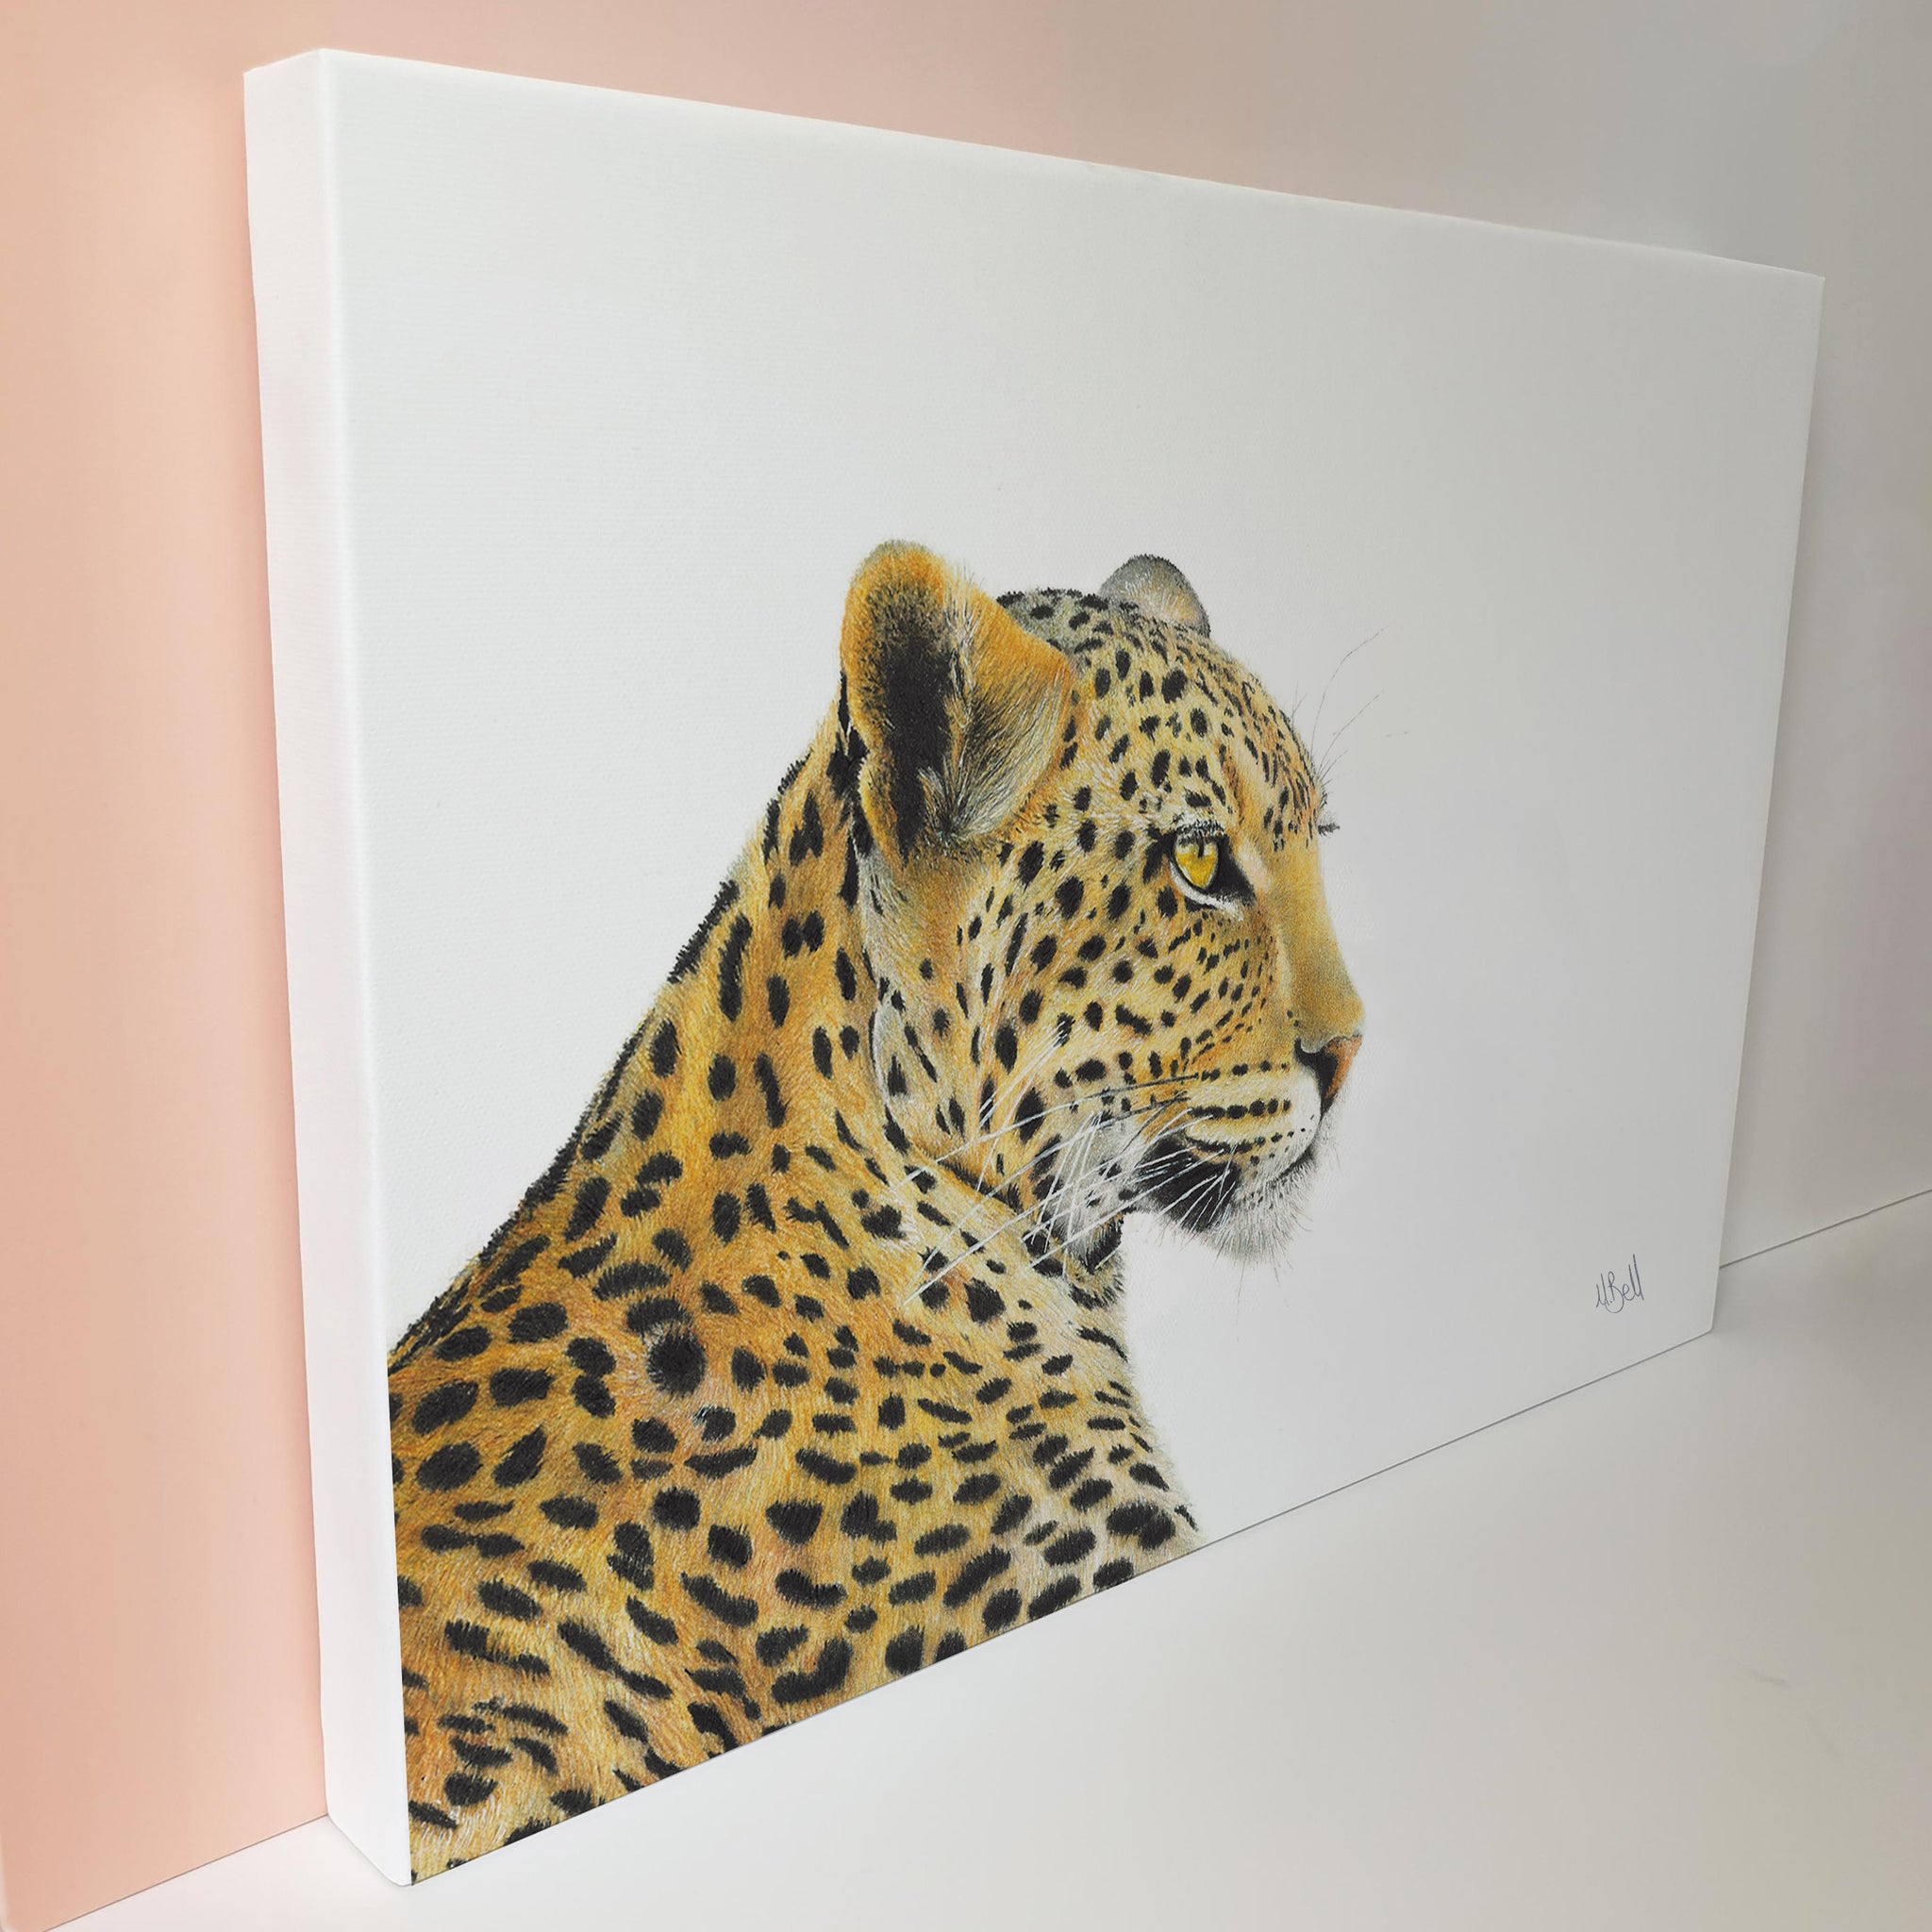 Leopard portrait nature artwork stretched onto canvas